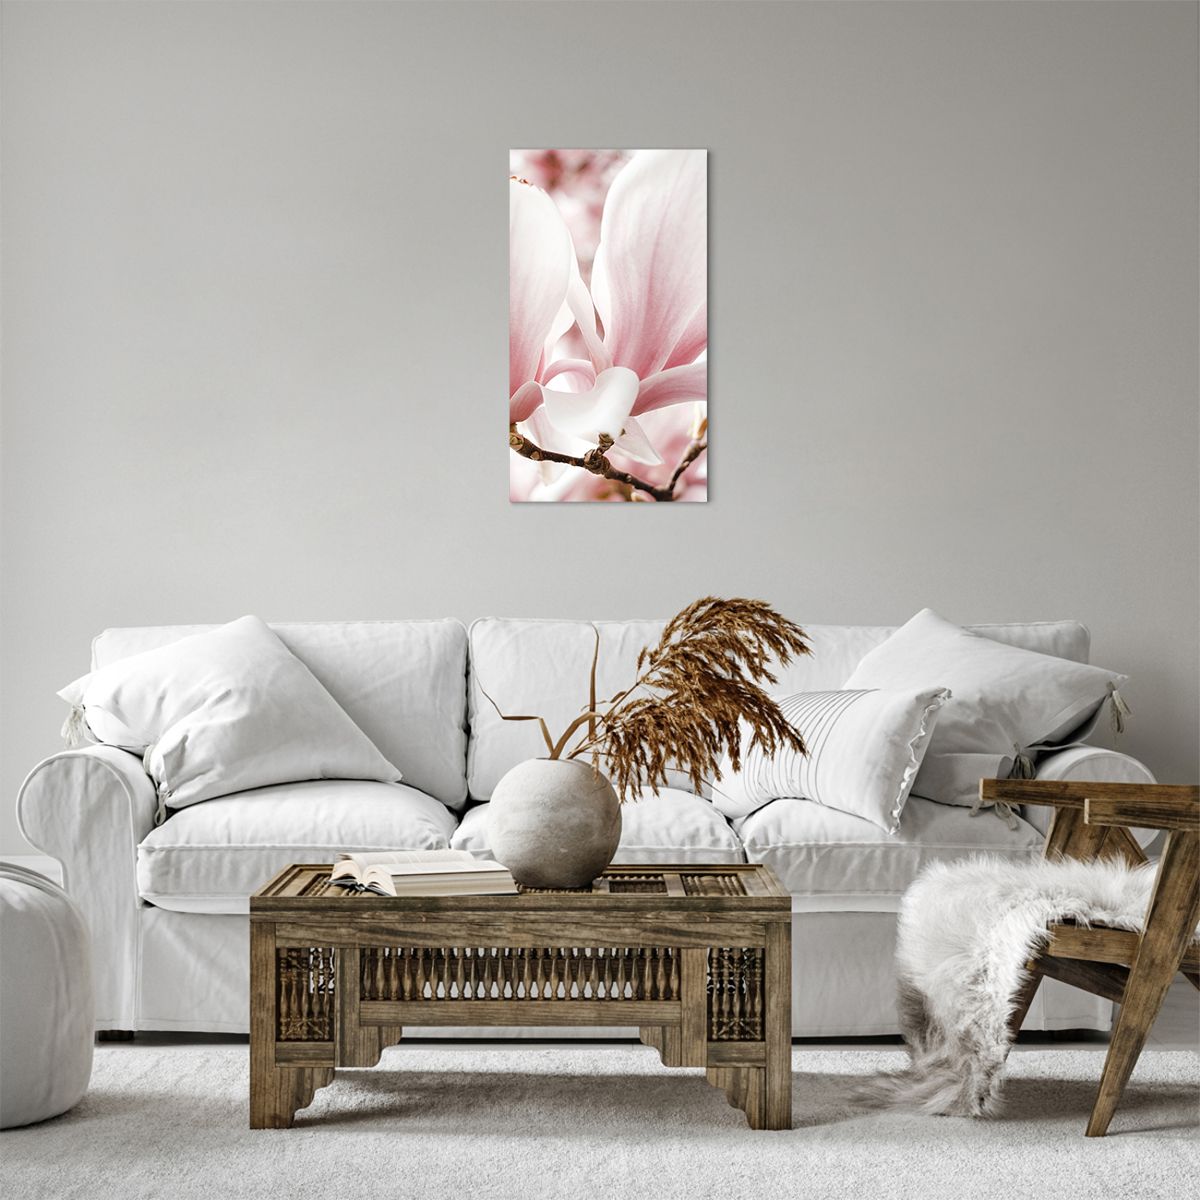 Obrazy na płótnie Gałązka Magnolii, Obrazy na płótnie Kwiat, Obrazy na płótnie Magnolia, Obrazy na płótnie Ogród, Obrazy na płótnie Natura